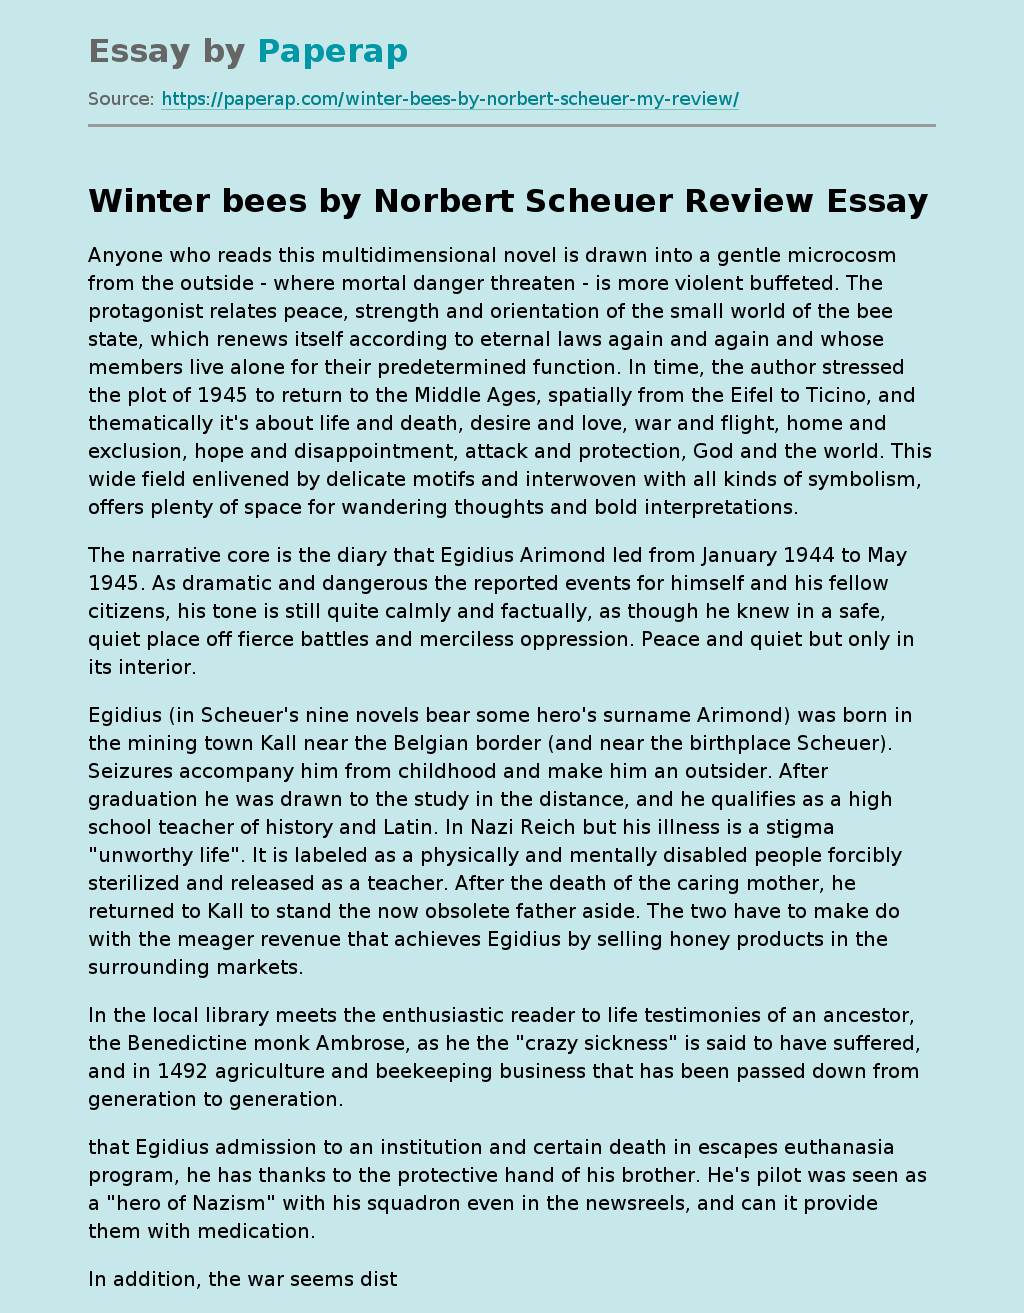 “Winter Bees” by Norbert Scheuer